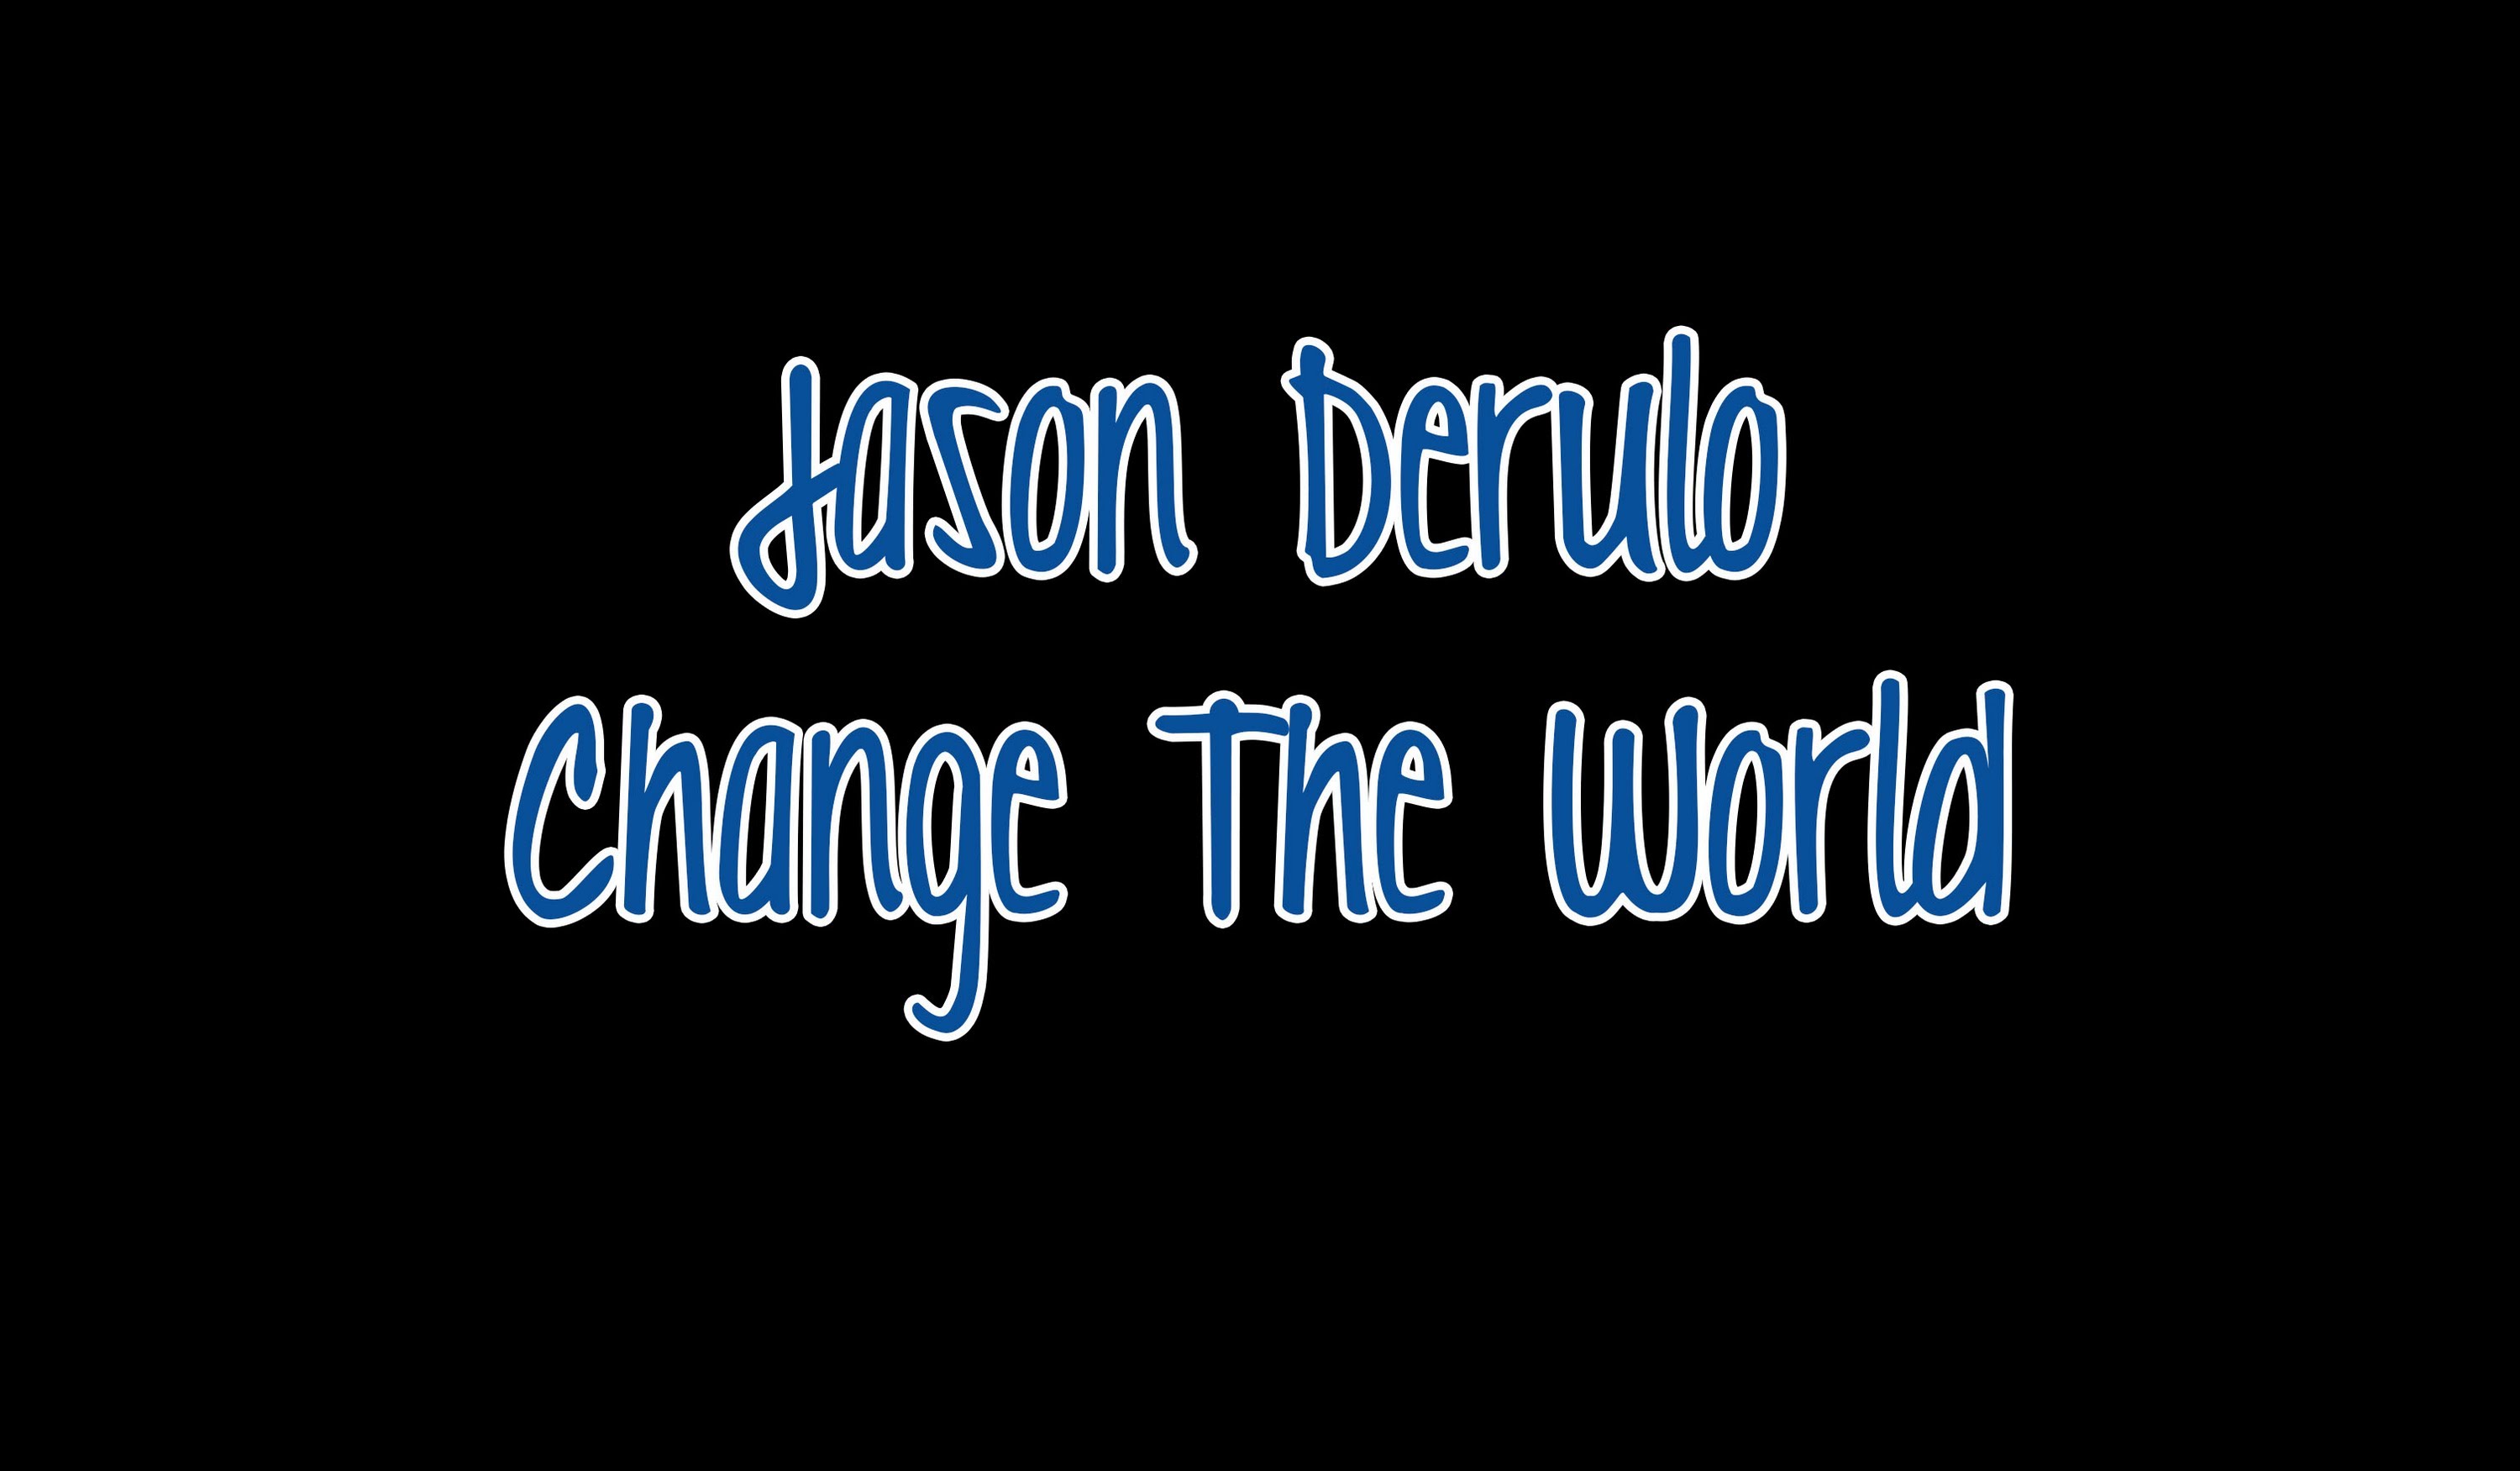 Jason Derulo - Change The World